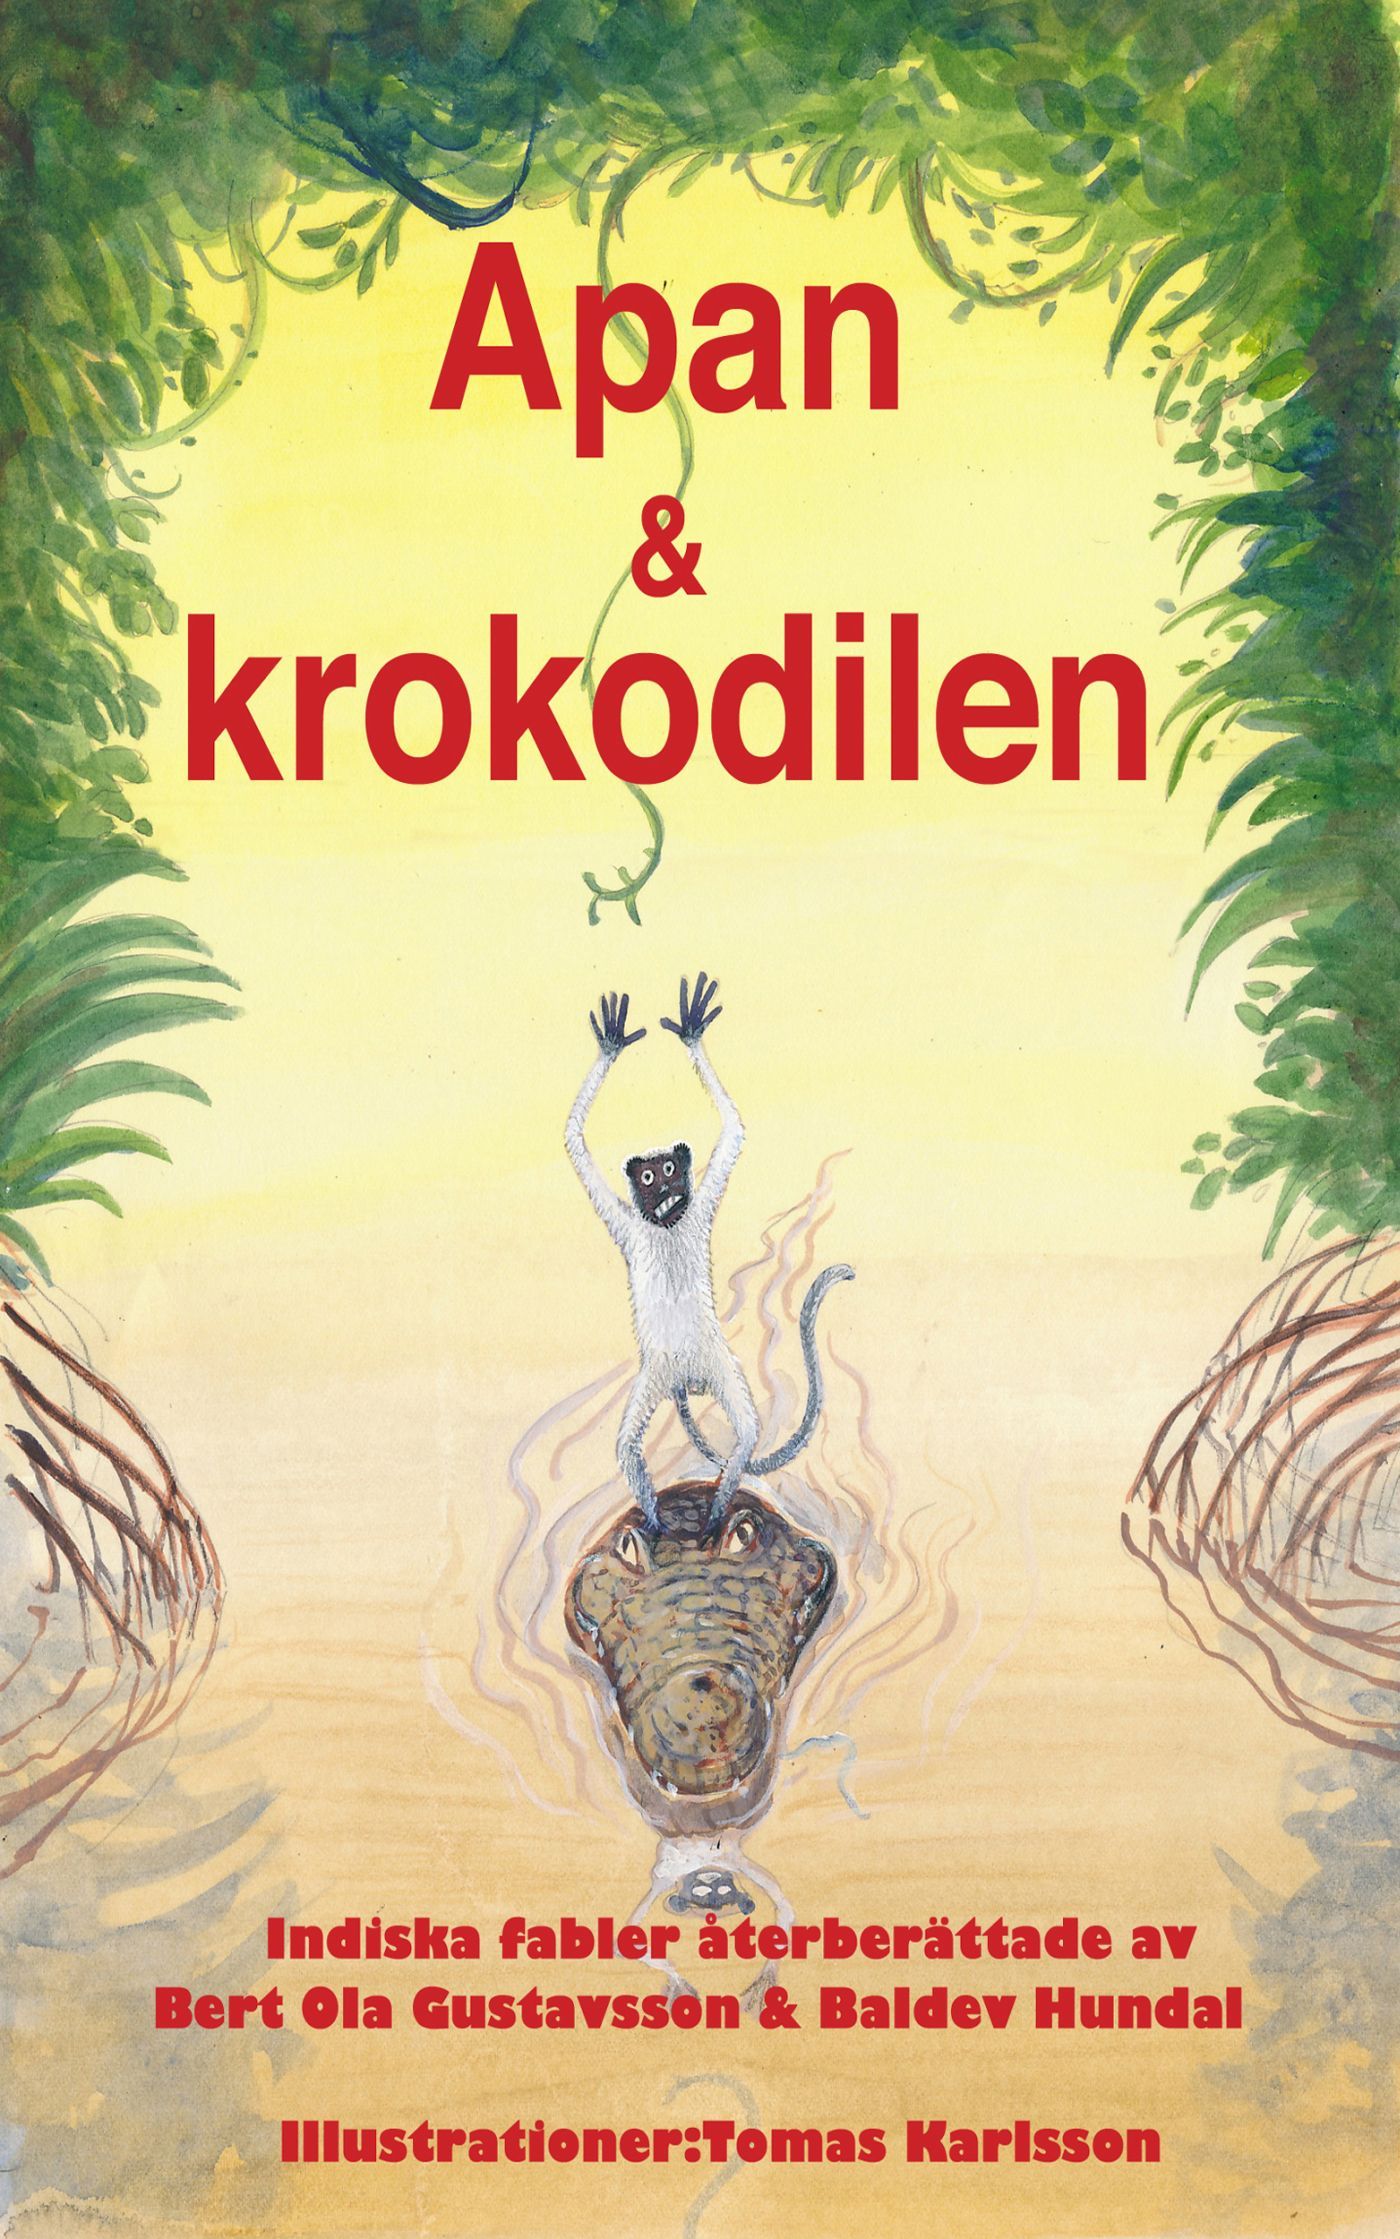 Apan & krokodilen, e-bok av Bert Ola Gustavsson, Baldev Hundal